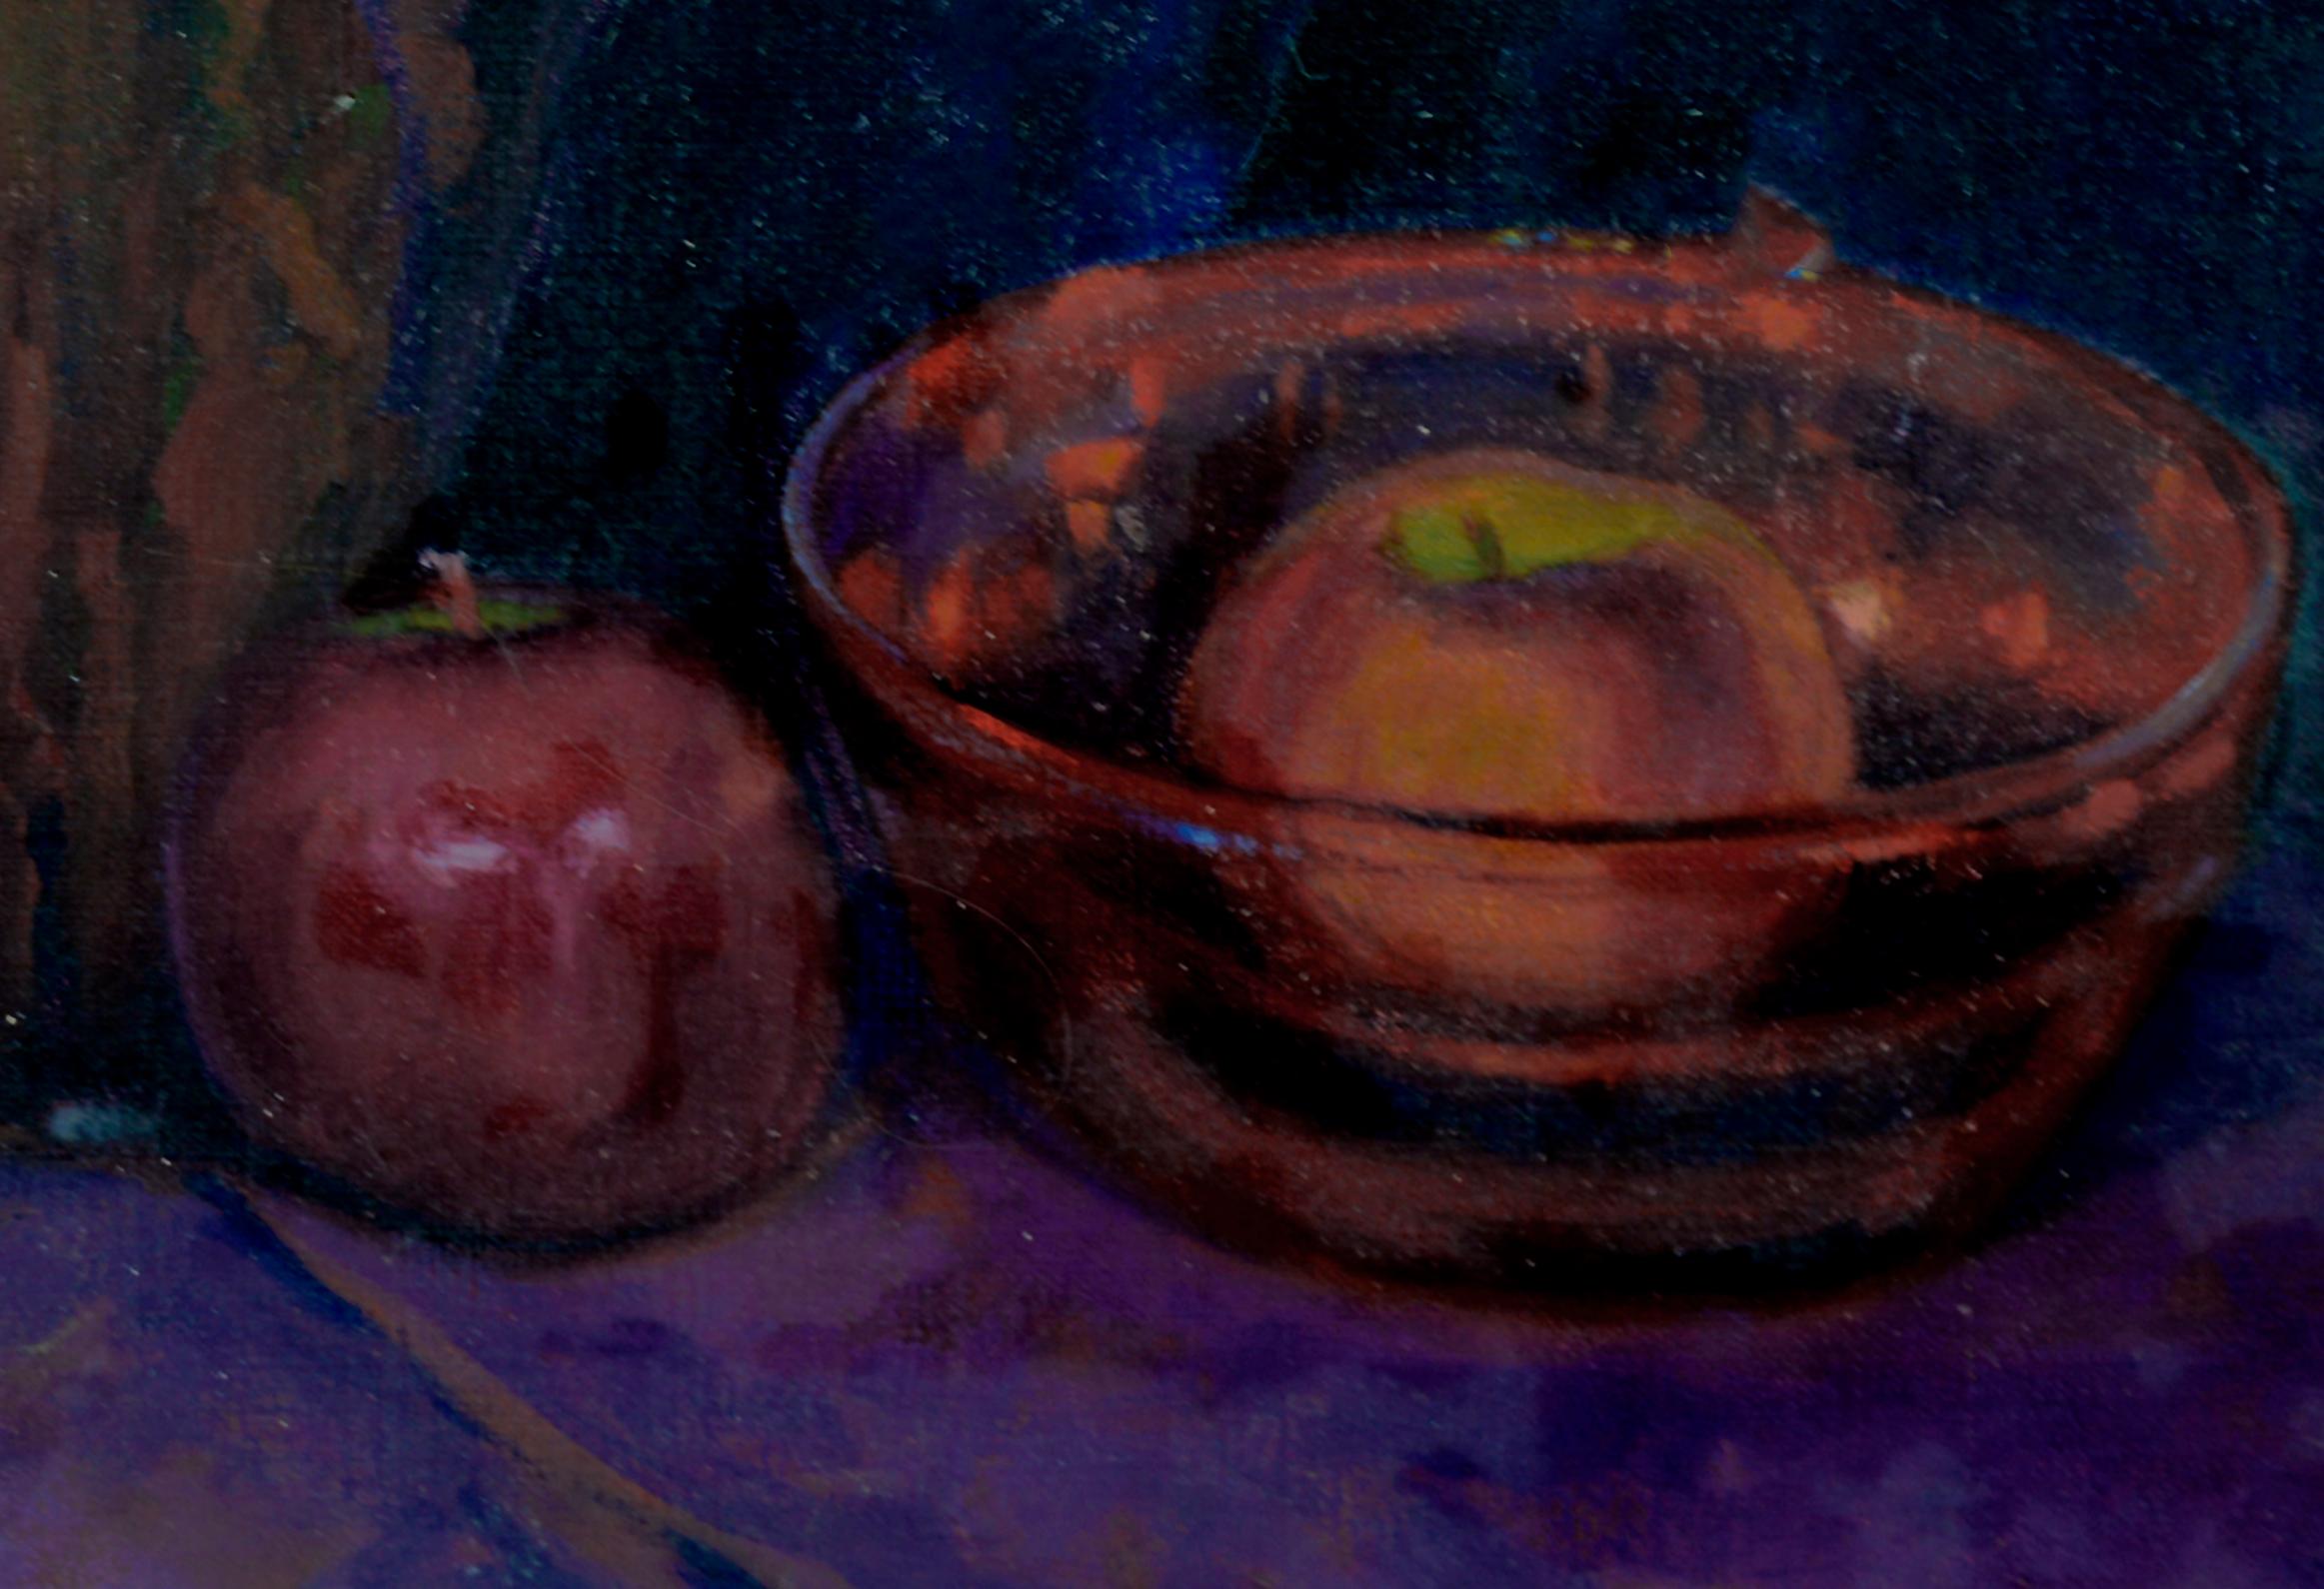 Stillleben in Lila mit Krug und Äpfeln von Alvin R. Raffel, 1928 (Amerikanischer Impressionismus), Painting, von Alvin Robert Raffel